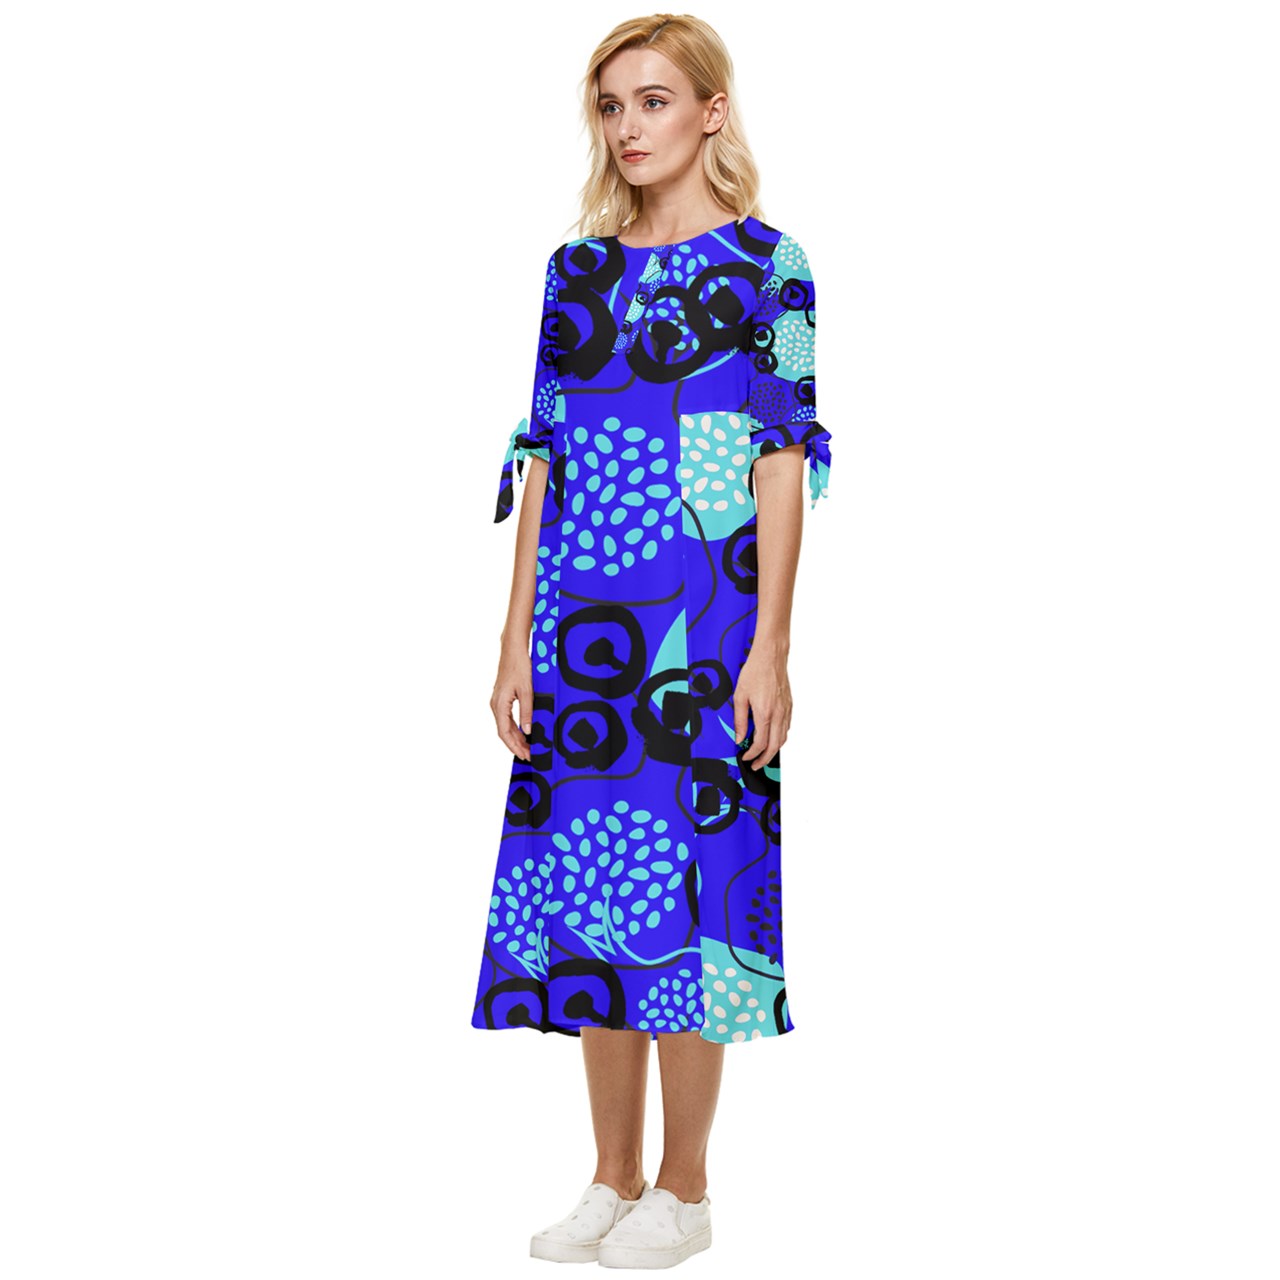 Mayi Transperant dress pattern Bow Sleeve Chiffon Midi Dress